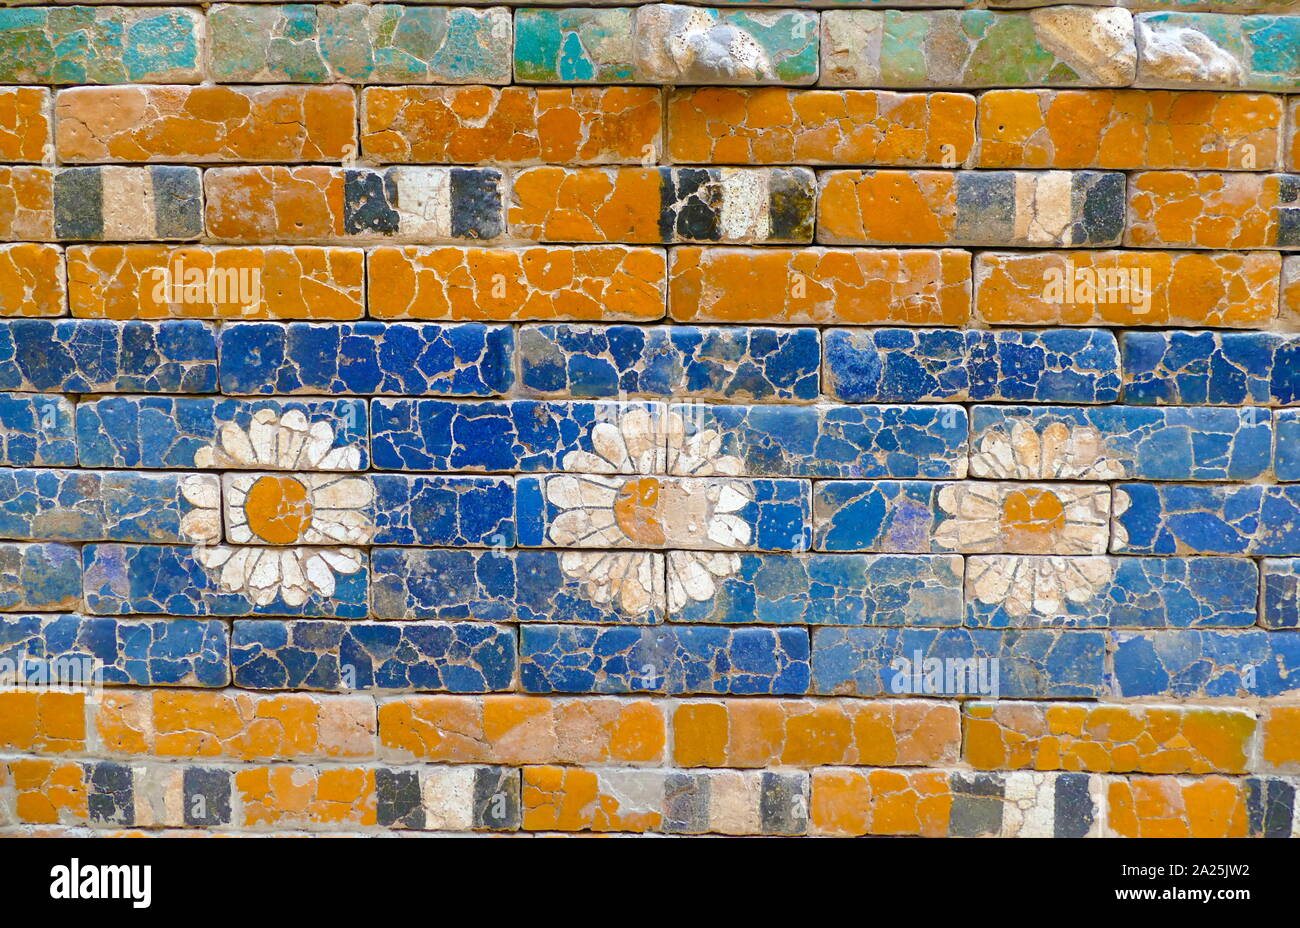 El camino Procesional de Babilonia. Construido en cerca de 575 A.C. por orden del rey Nabucodonosor II en el lado norte de la ciudad. Fue parte de una gran pared forma procesional hacia la ciudad. Las paredes estaban terminados en ladrillos vidriados principalmente en azul, con animales y deidades en bajo relieve en los intervalos, estos también compuesta de ladrillos que son moldeadas y de color diferente. Fue excavado a comienzos del siglo XX, y una reconstrucción usando los ladrillos originales, terminado en 1930, se muestra ahora en Berlín, en el Museo de Pérgamo. Foto de stock